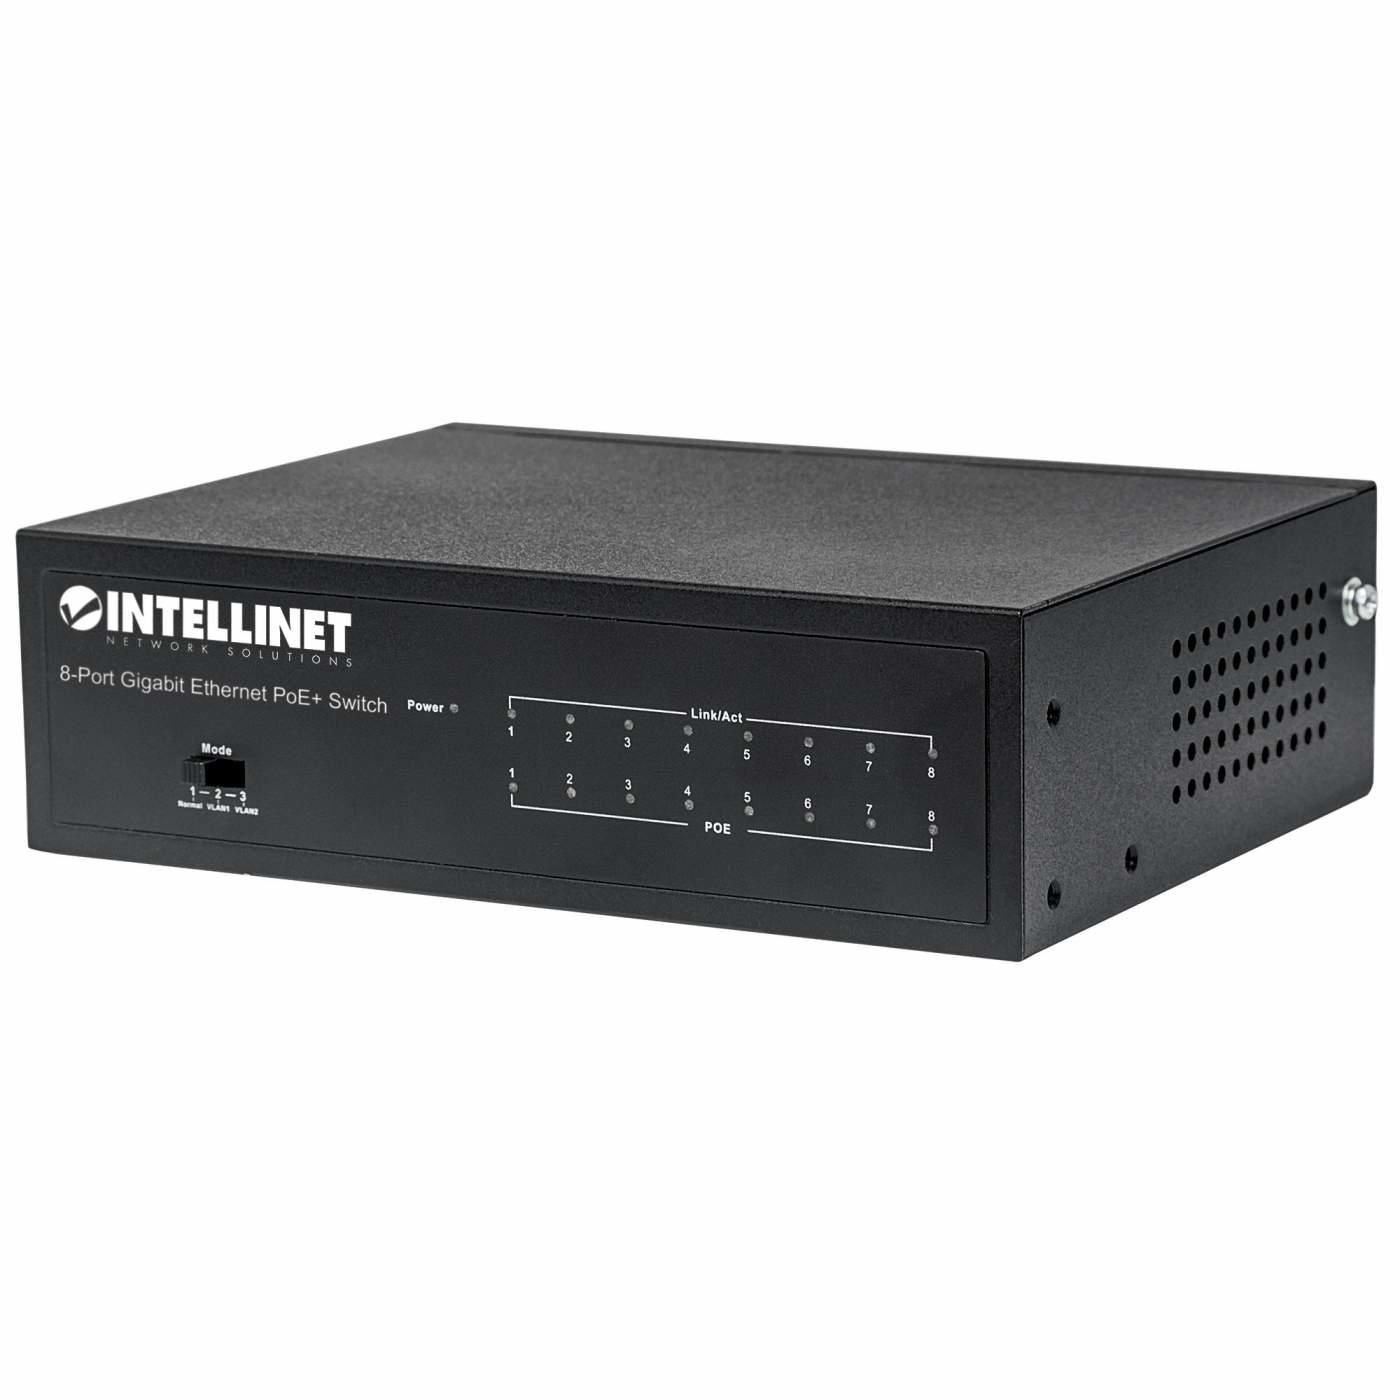 INTELLINET 8-Port Gigabit Ethernet PoE+ Switch, IEEE 802.3at/af Power over Ethernet (PoE+/PoE) Compl